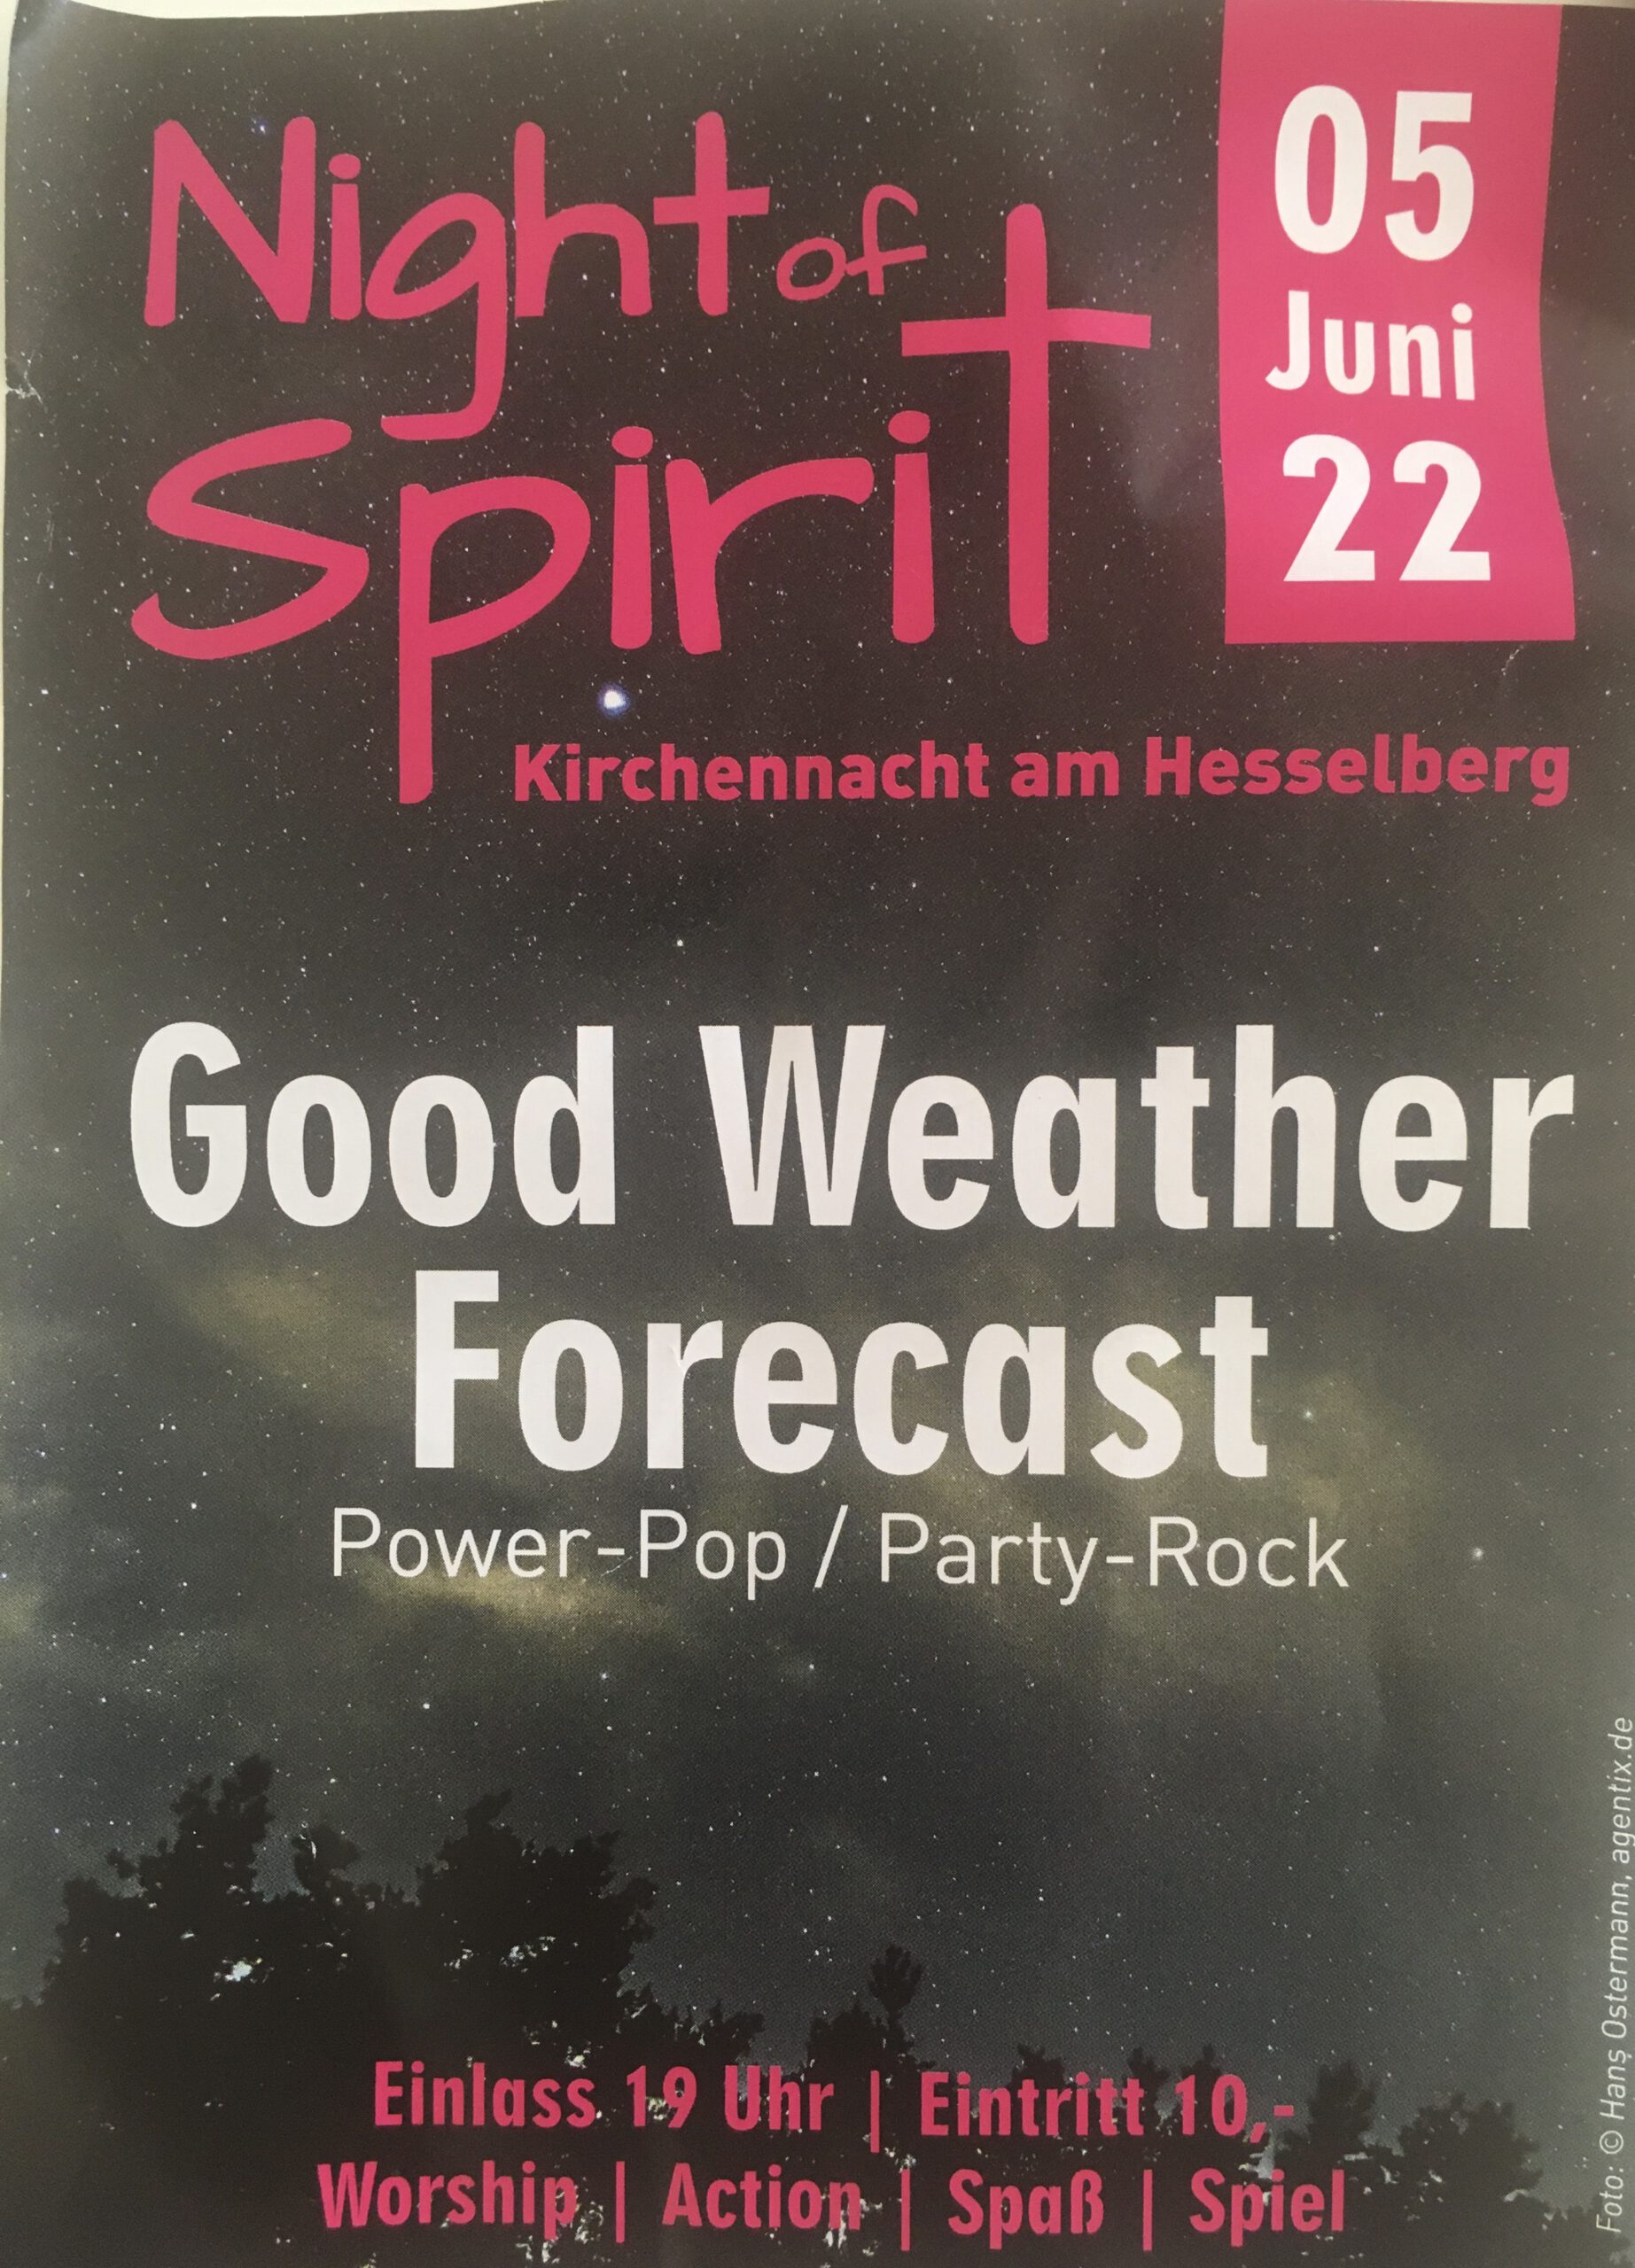 Good Weather Forecast – Bayerischer Kirchentag am Hesselberg